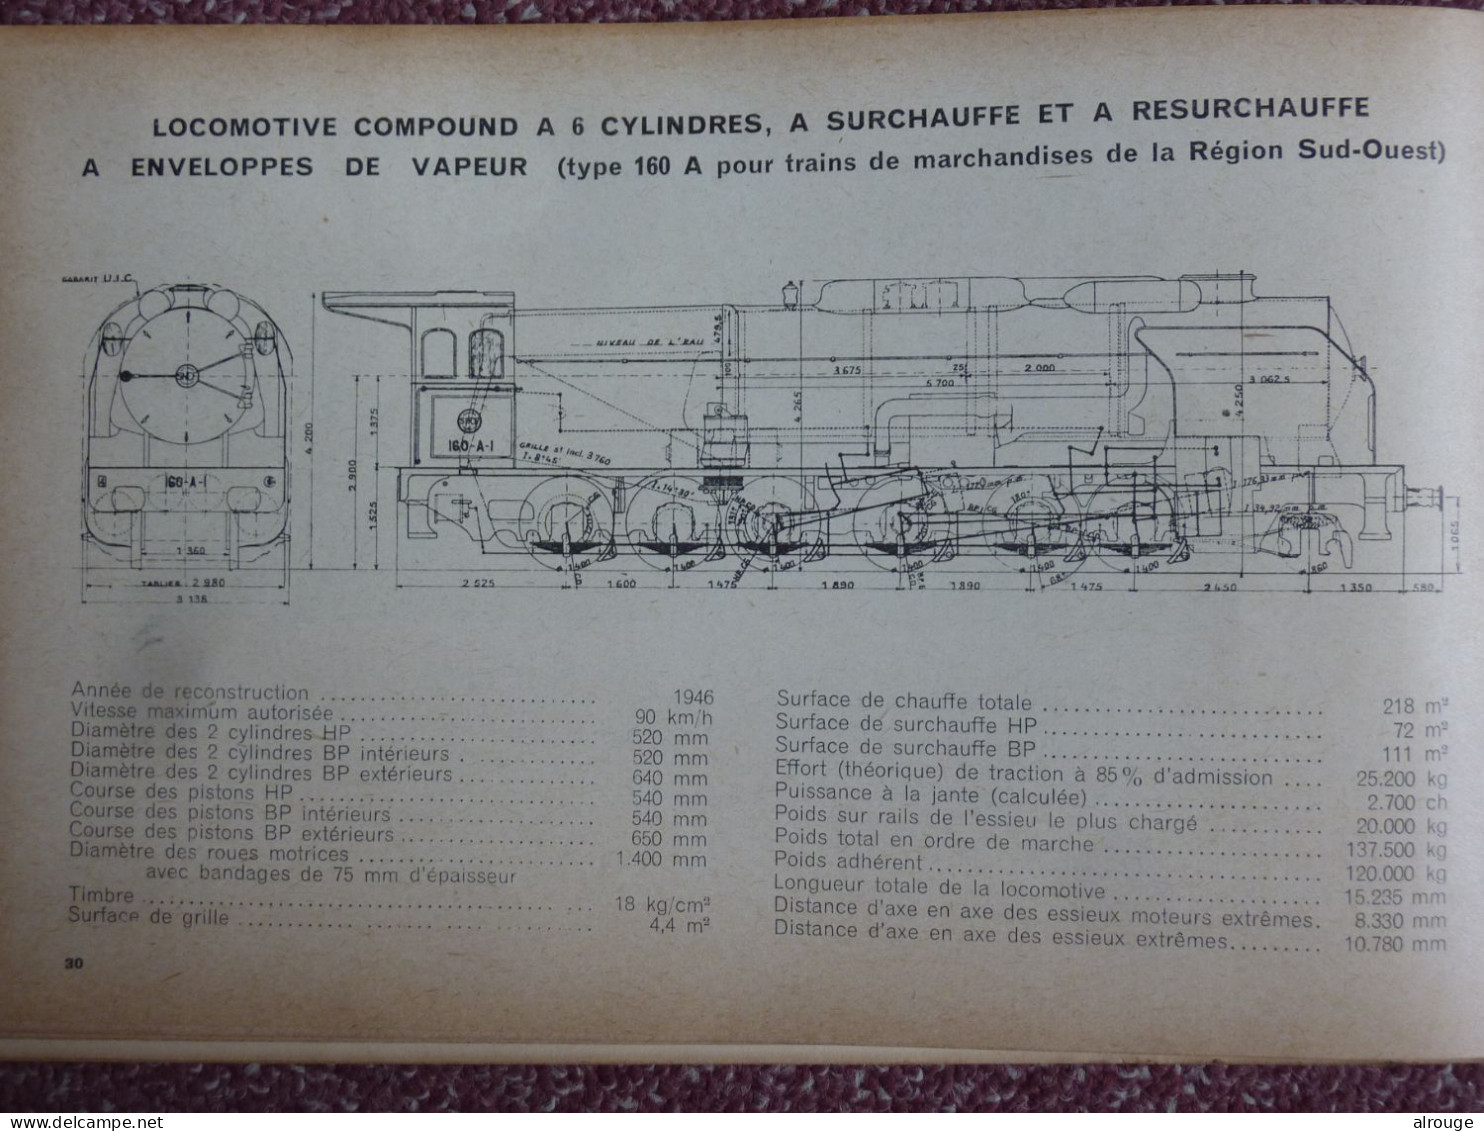 Locomotives Des Chemins De Fer Français, Paul Legrégeois, 1947, Illustré - Chemin De Fer & Tramway